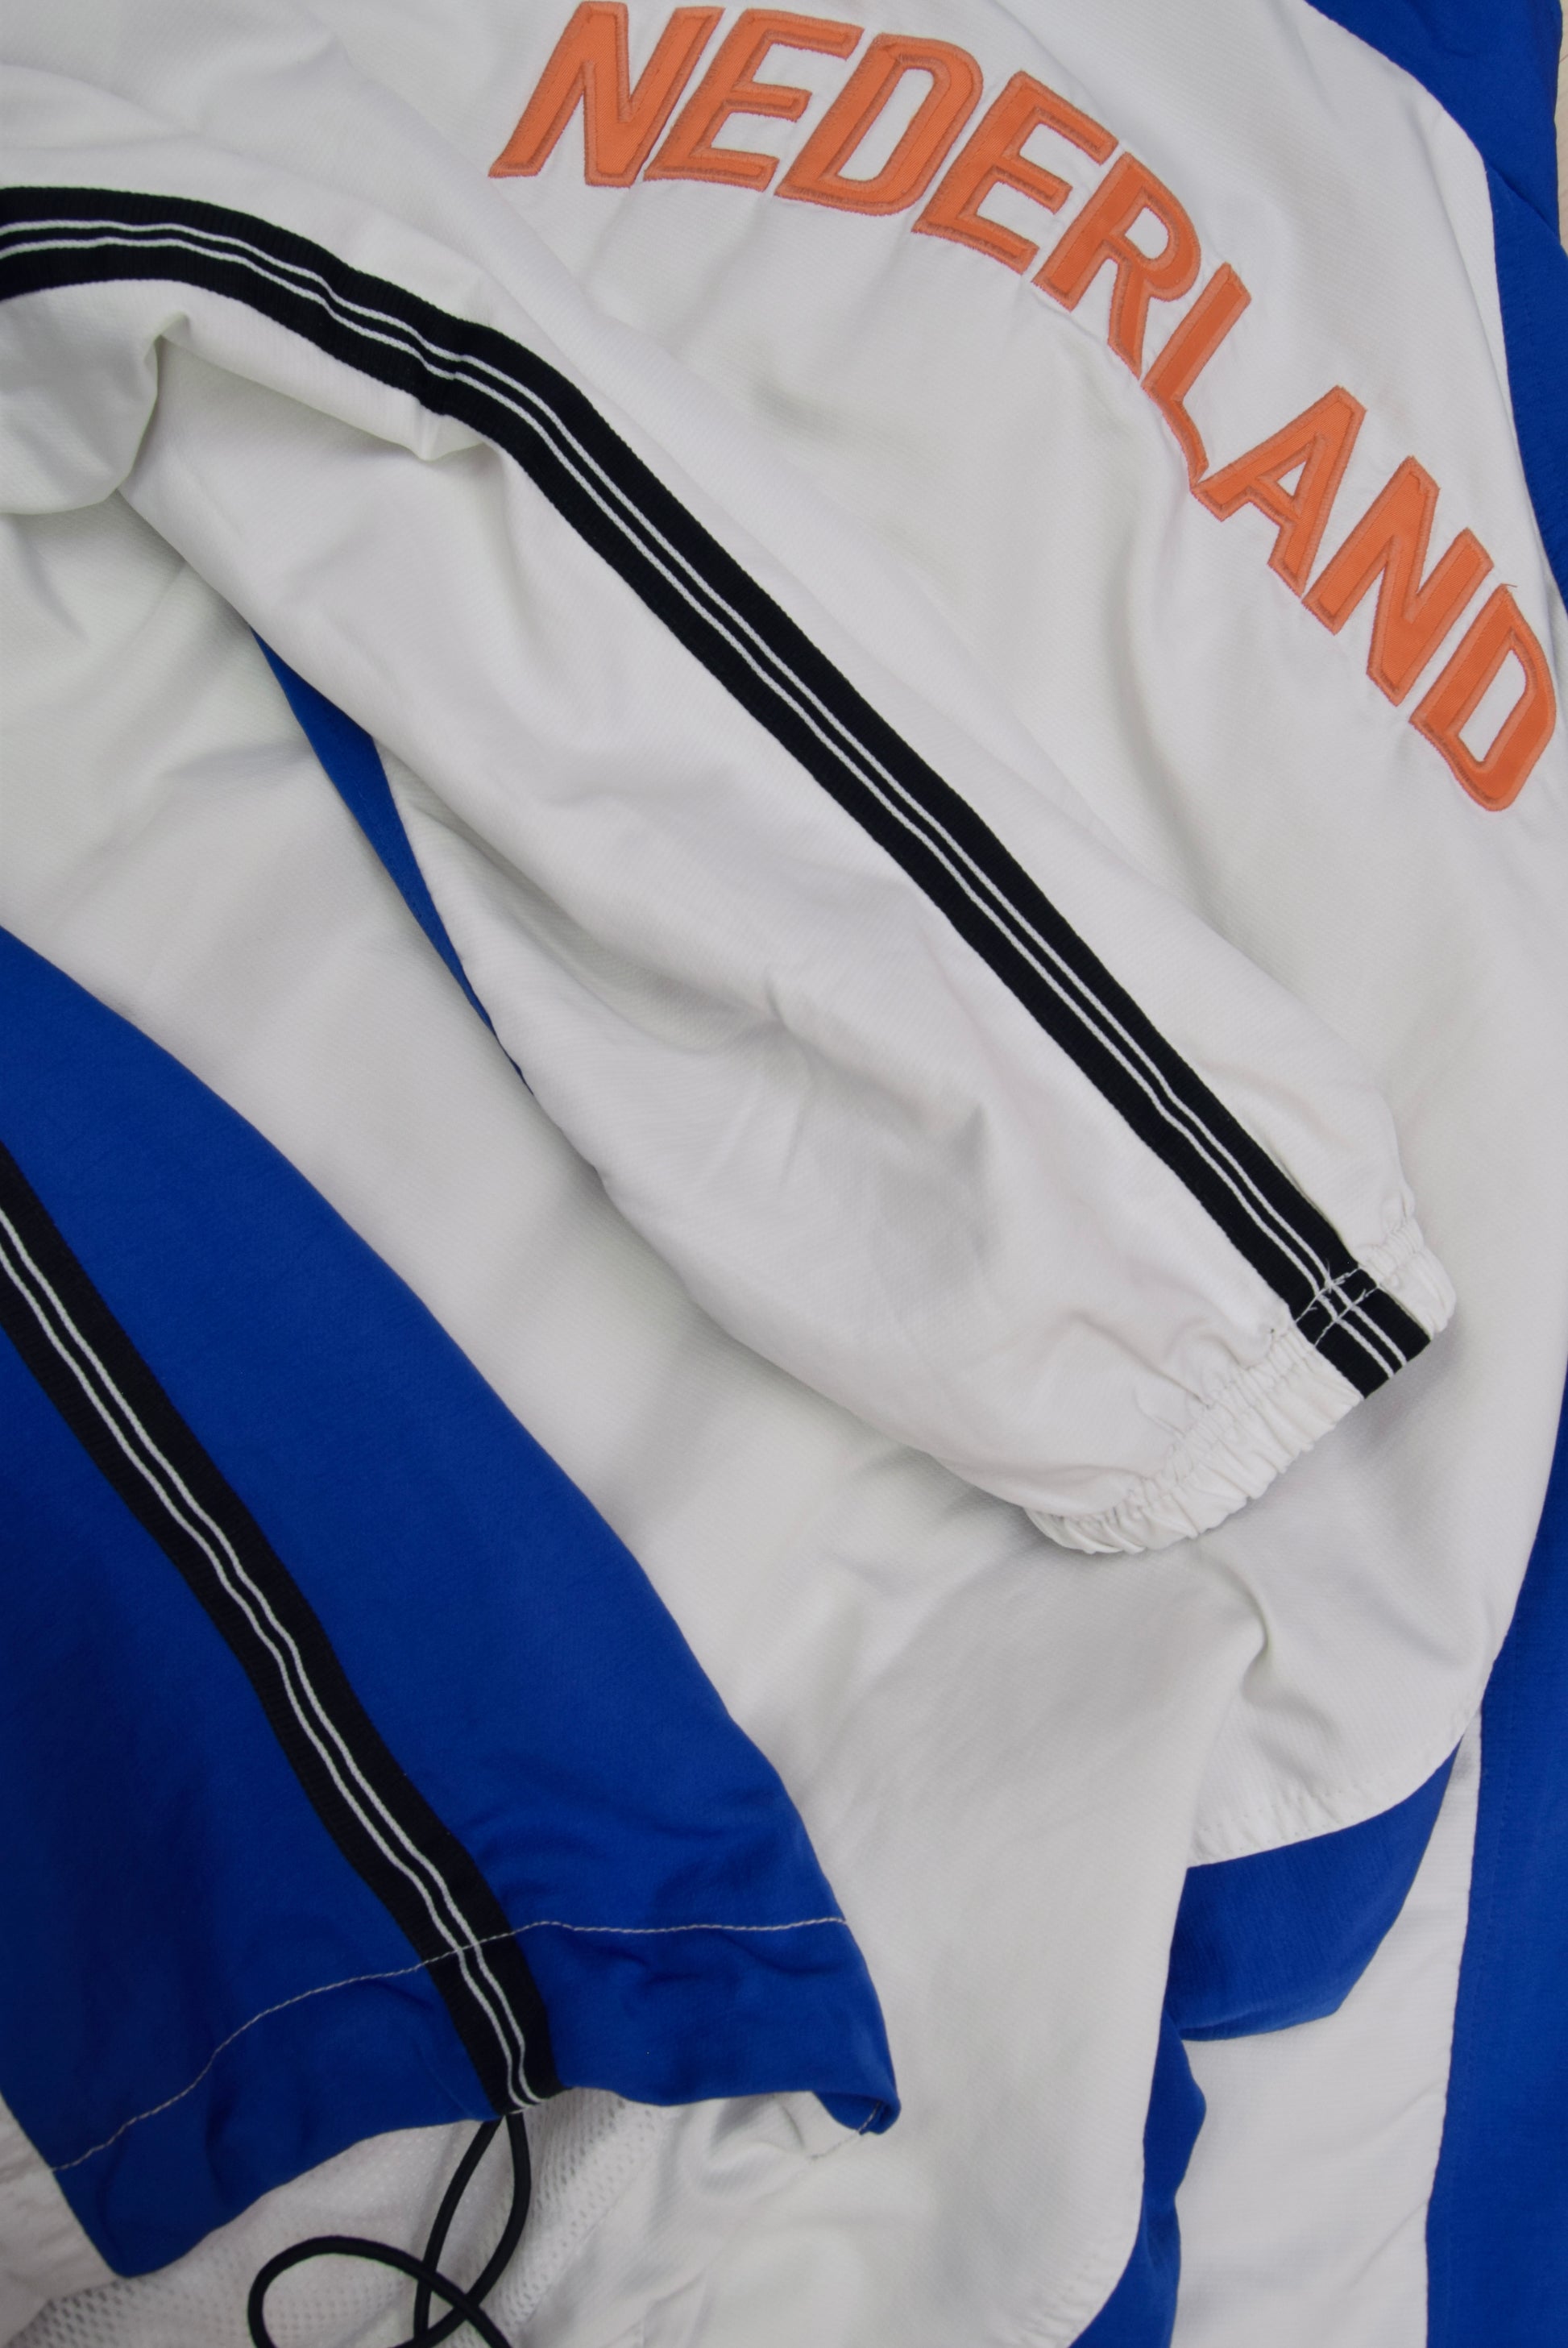 Vintage Nederland Netherlands Holland KNVB Nike 1998-1999 Jacket White Blue Size L